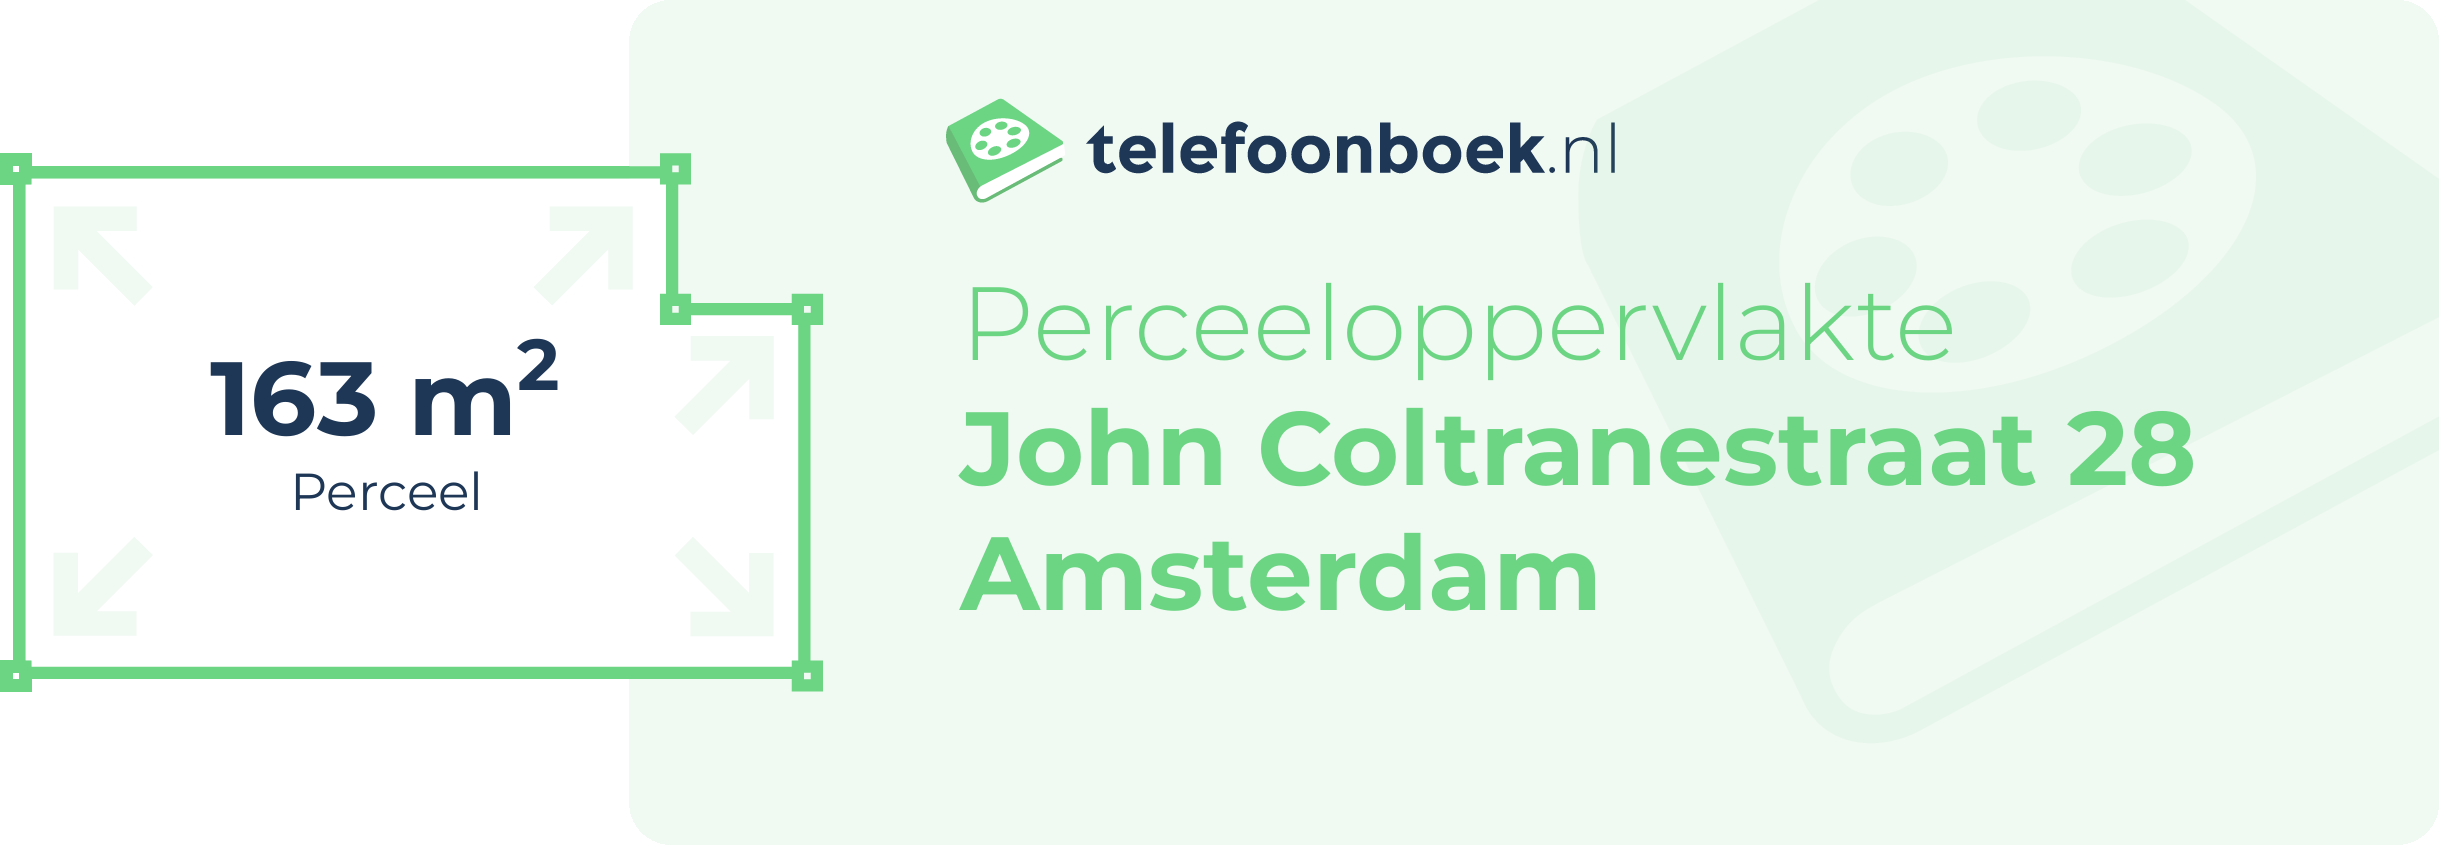 Perceeloppervlakte John Coltranestraat 28 Amsterdam